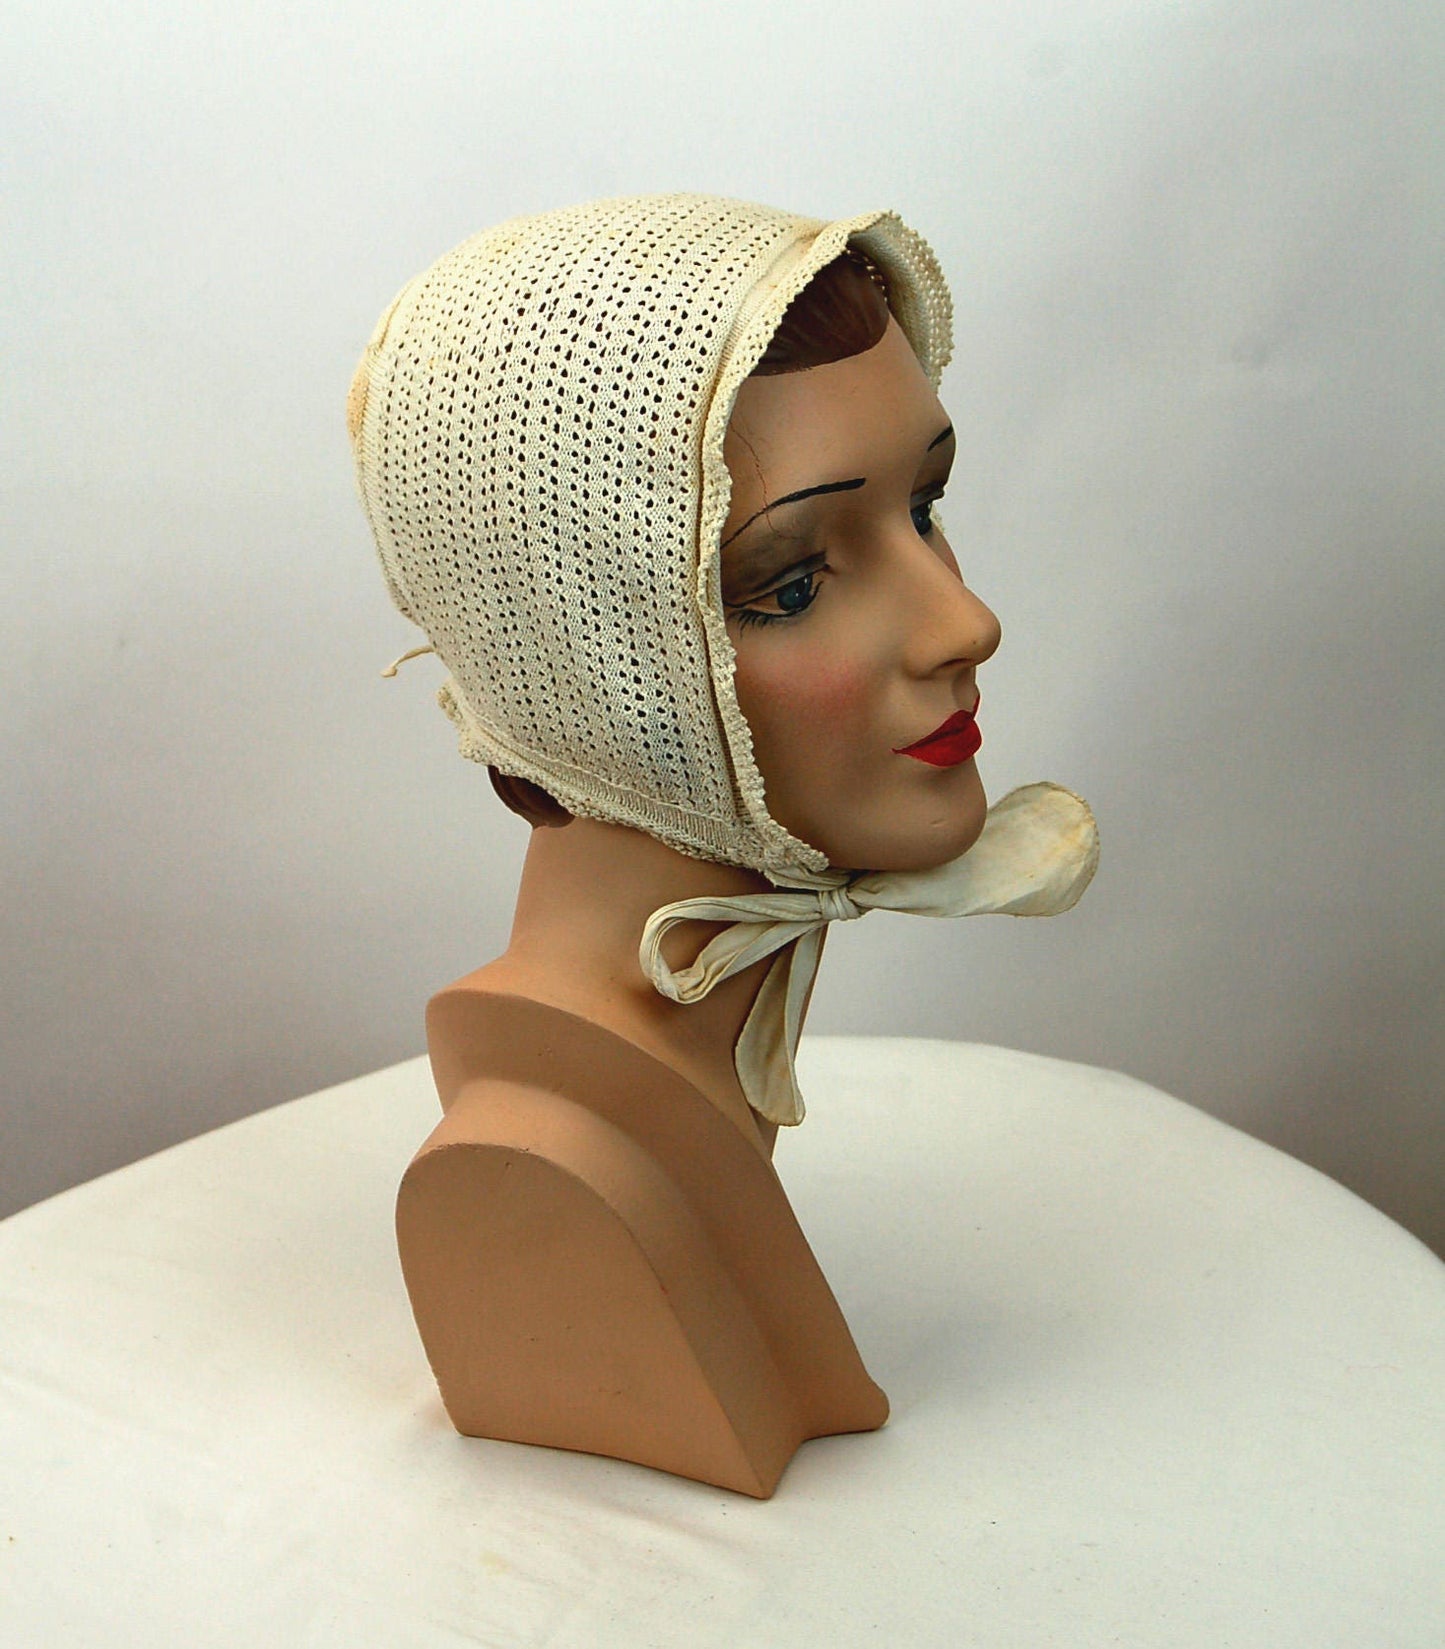 Antique night cap cotton crocheted bonnet 1800s ivory white